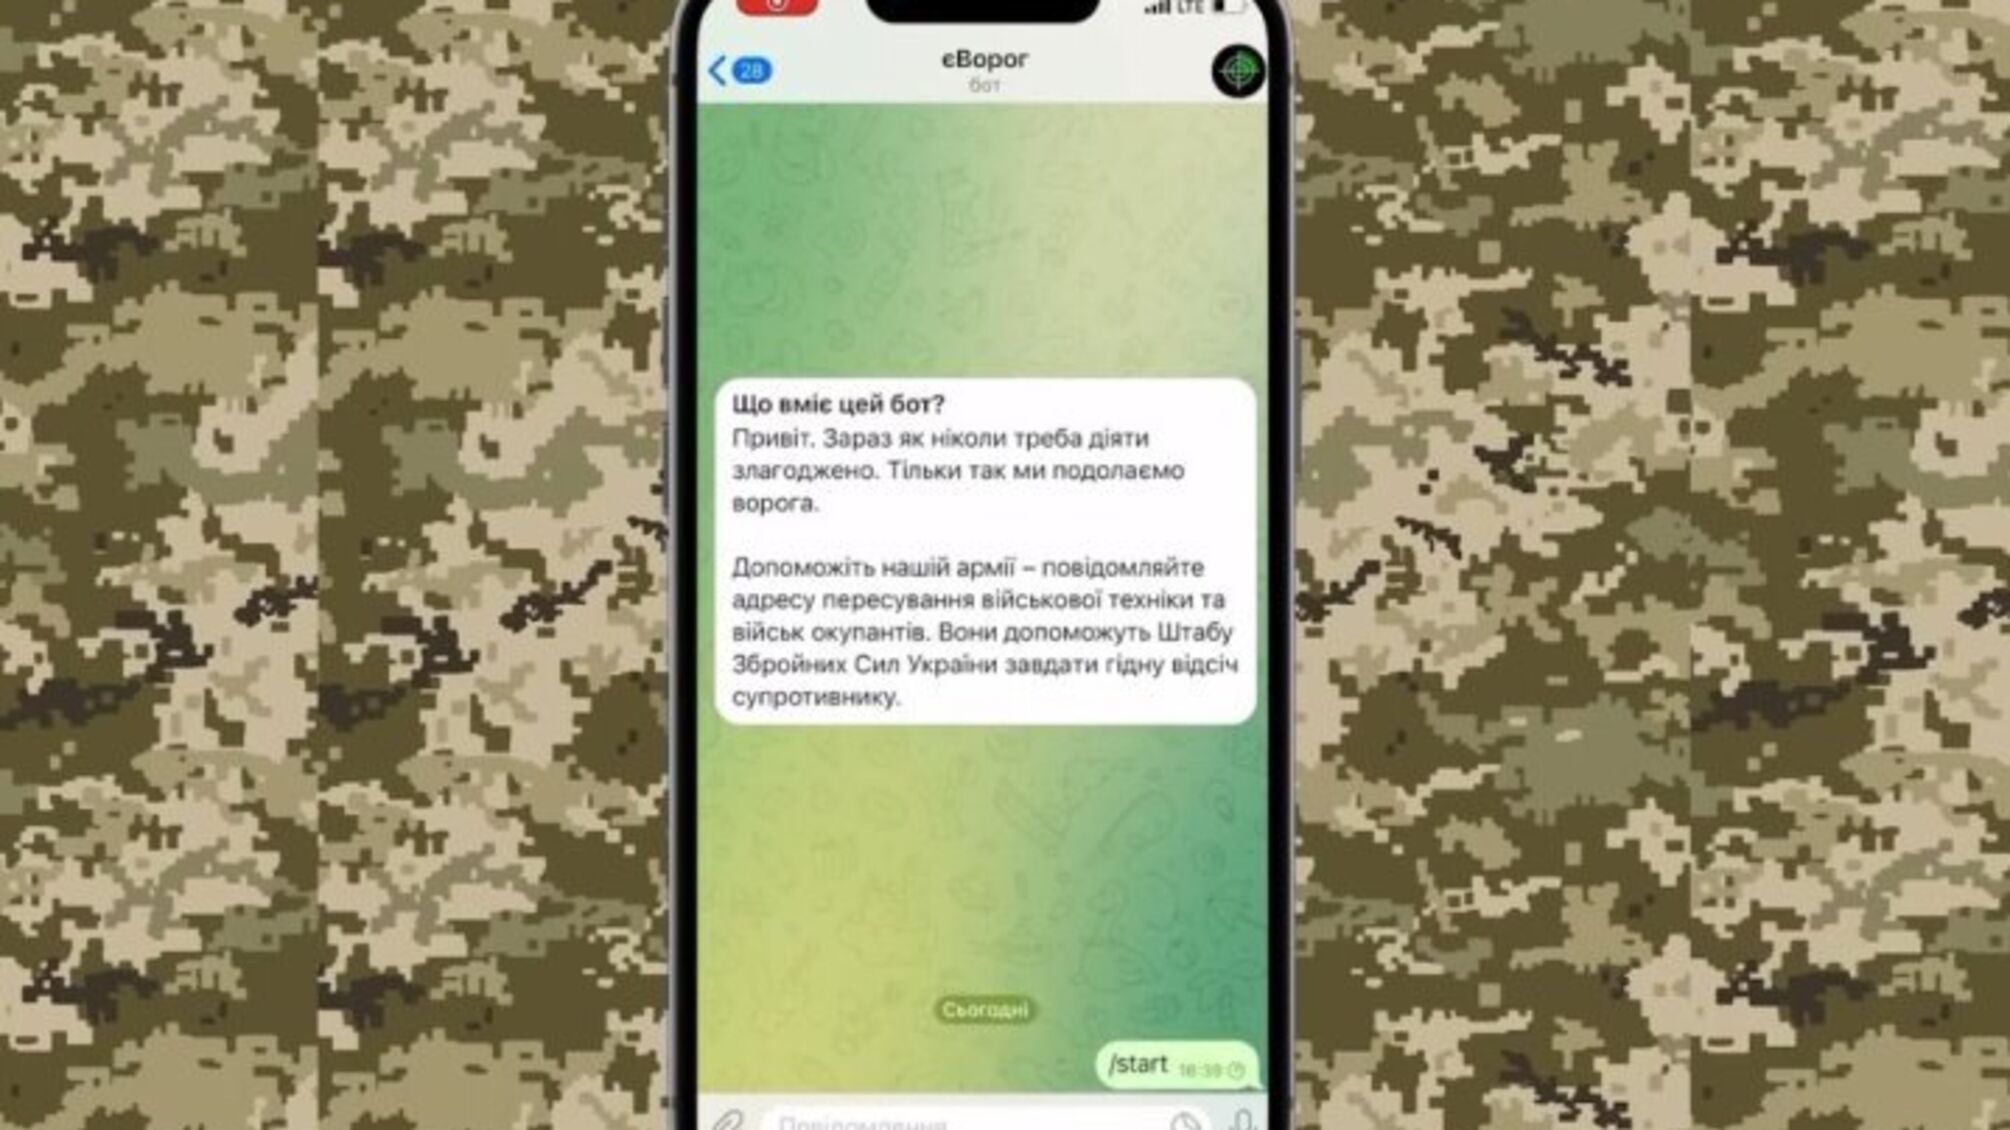 Telegram заблокував чатбот 'єВорог', який використовувався для повідомлення про рух окупантів, - ГУР